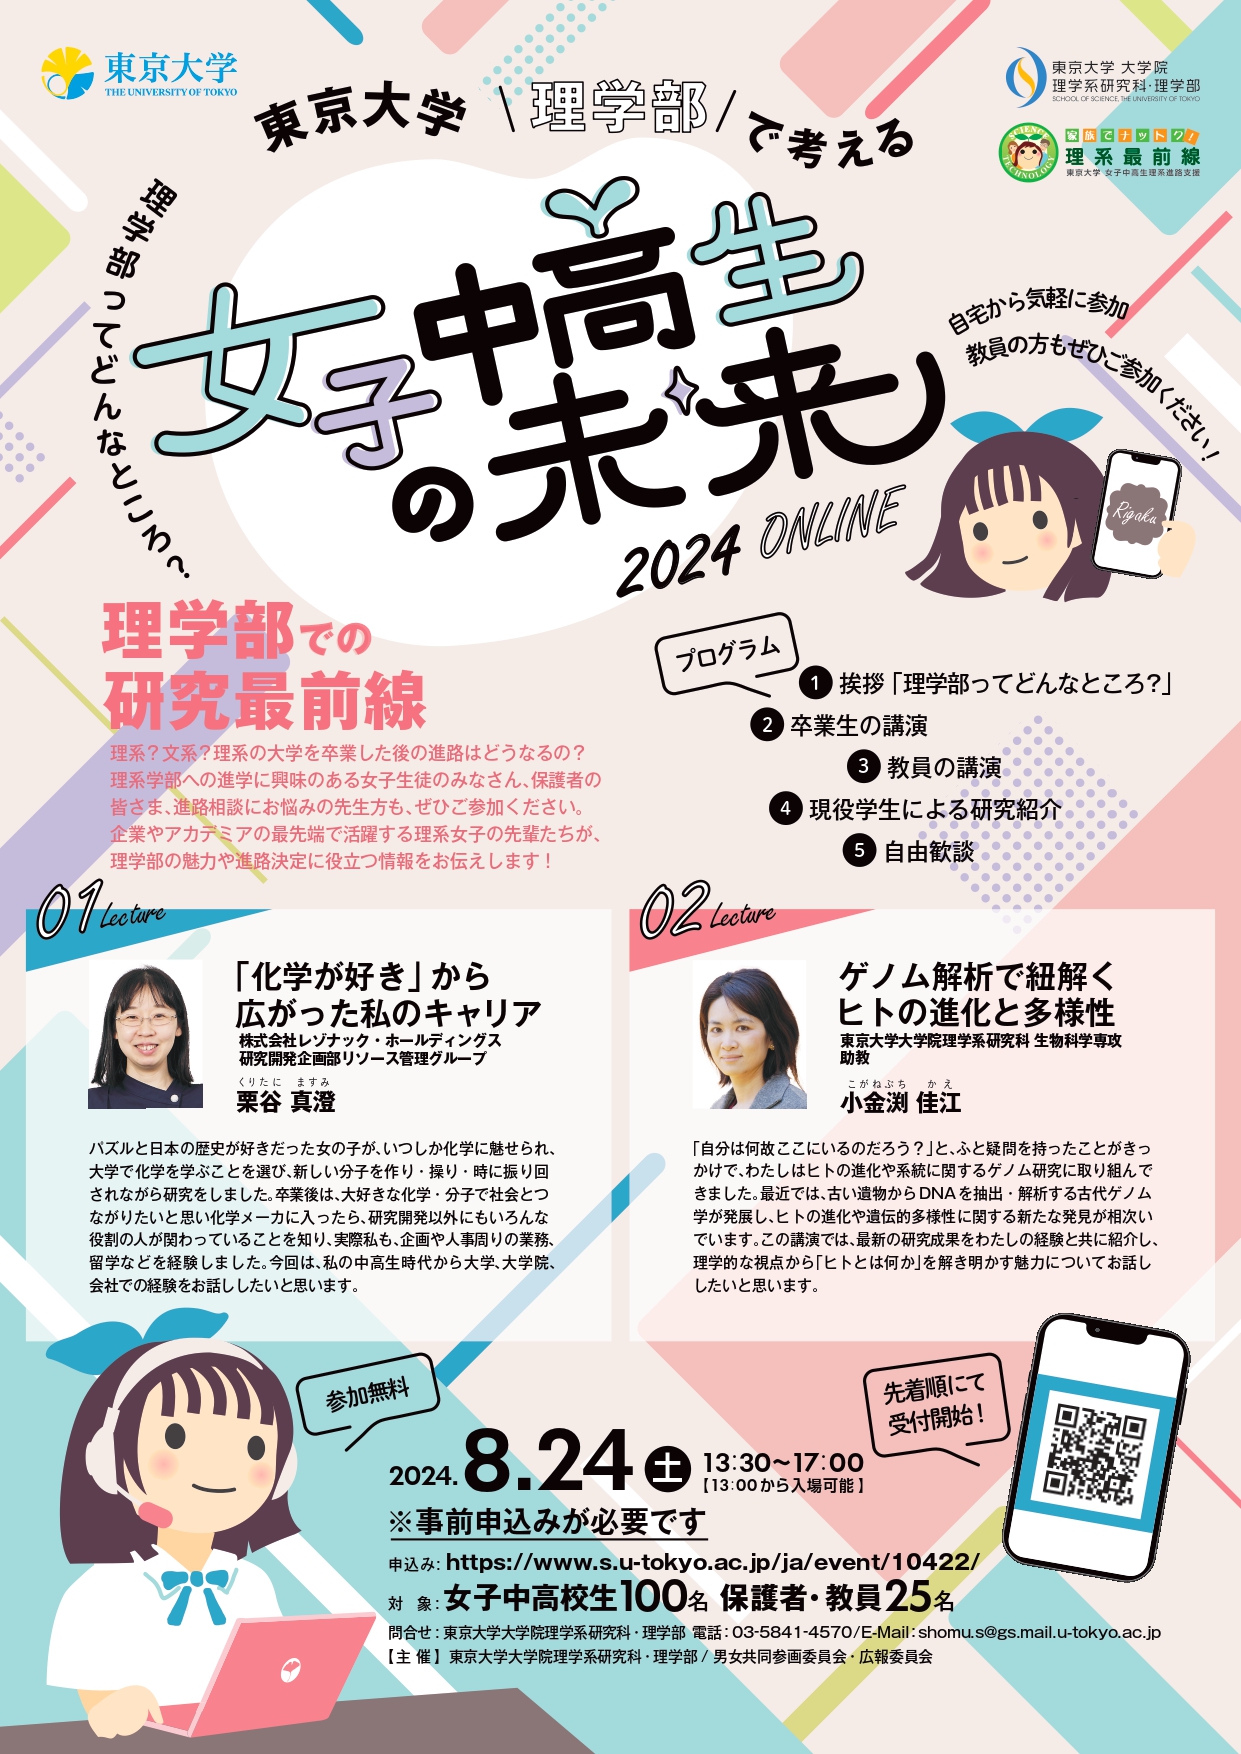 東京大学理学部で考える女子中高生の未来2024 ONLINE